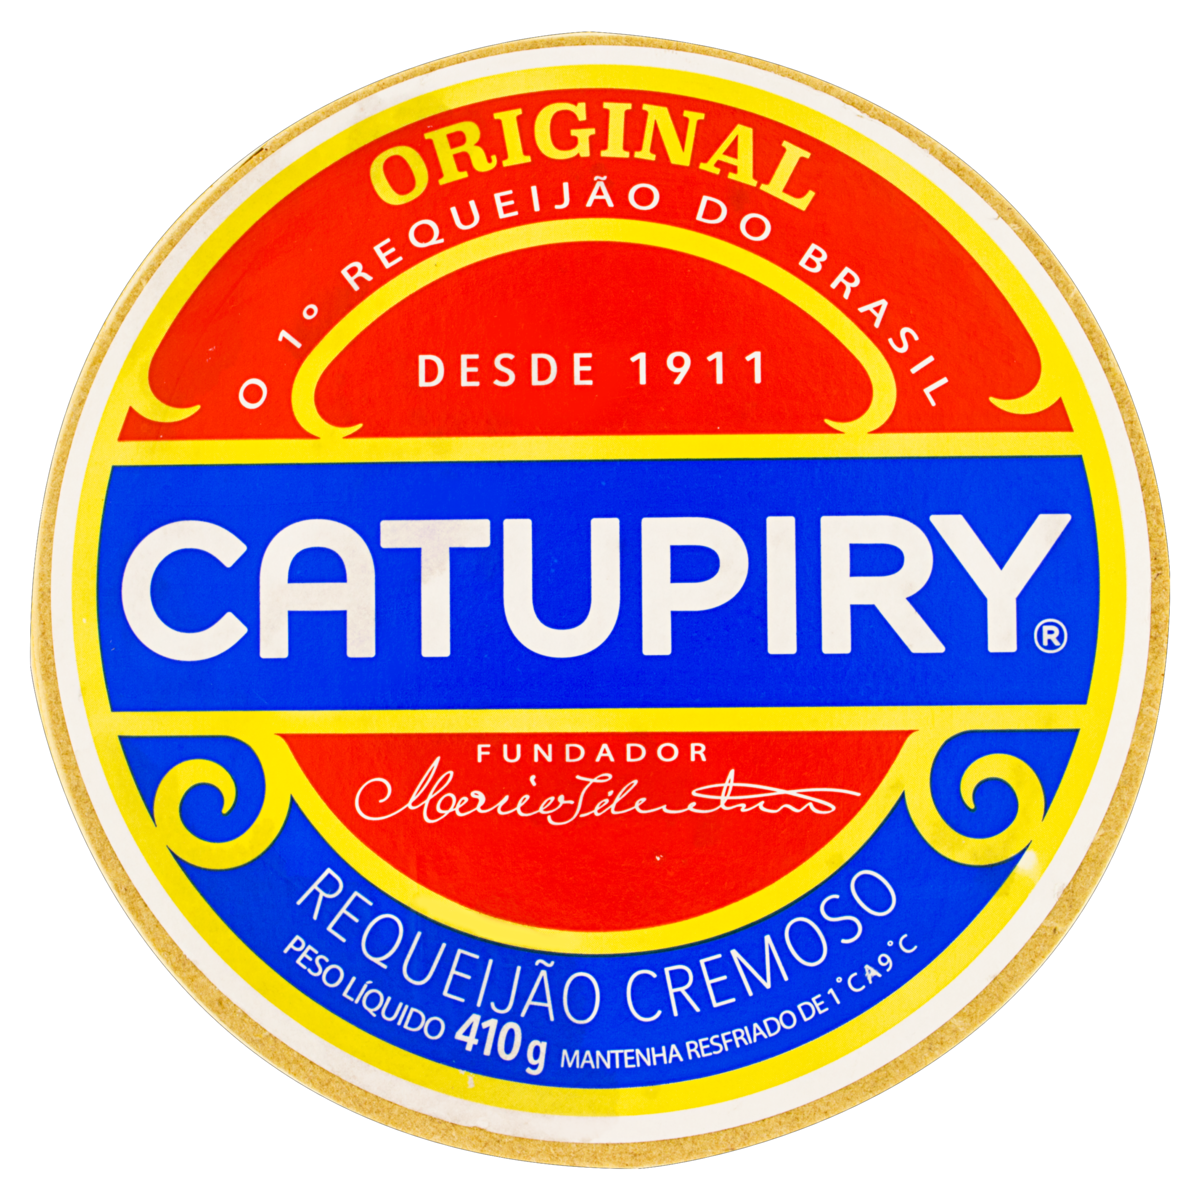 7896353300019 - REQUEIJÃO CREMOSO CATUPIRY ORIGINAL 410G